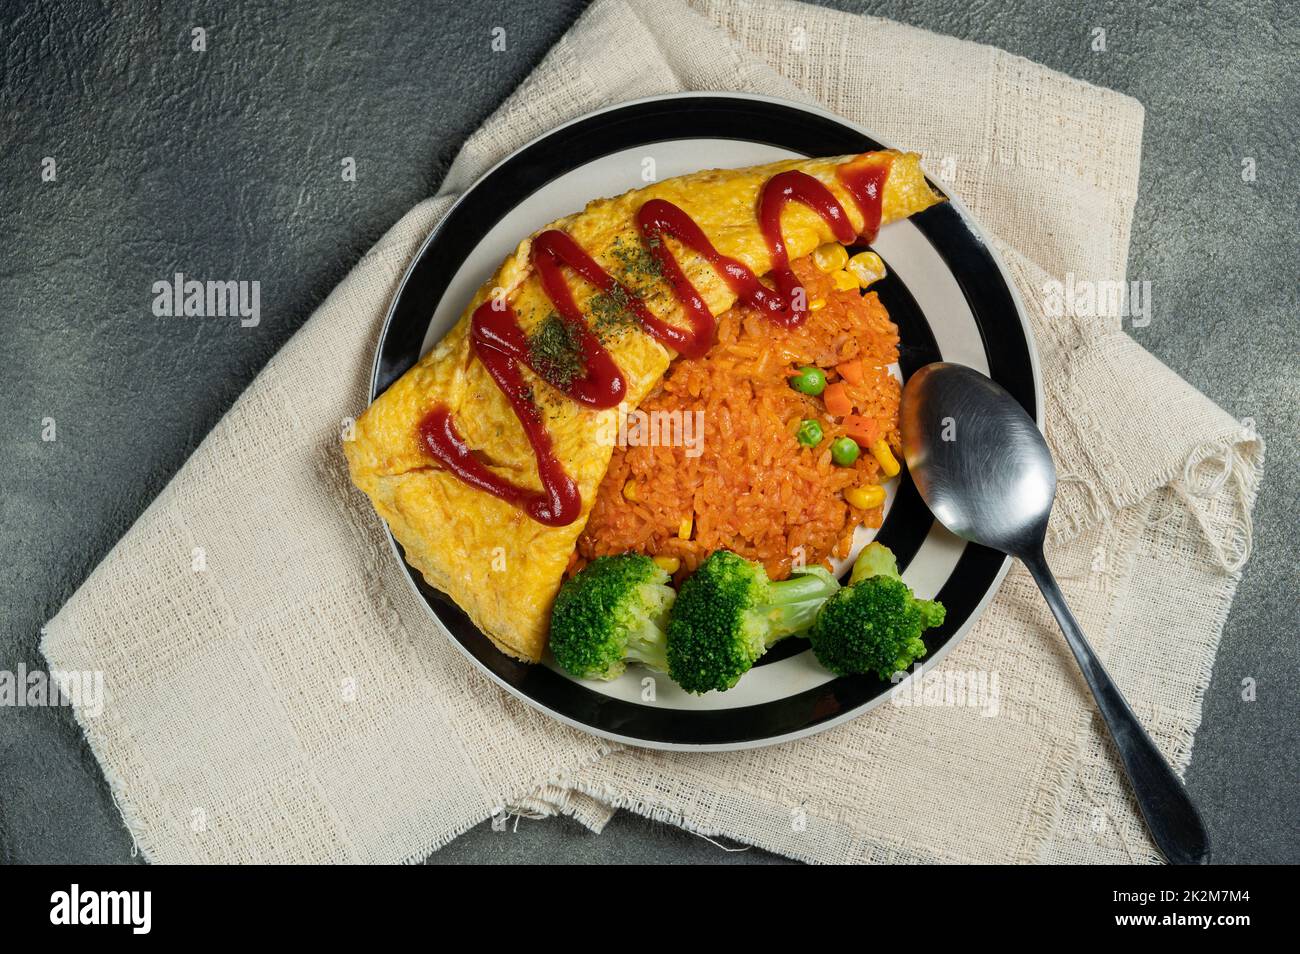 omelette japonaise maison (omelette) avec riz au poulet japonais, broccolit et fond sombre. Banque D'Images